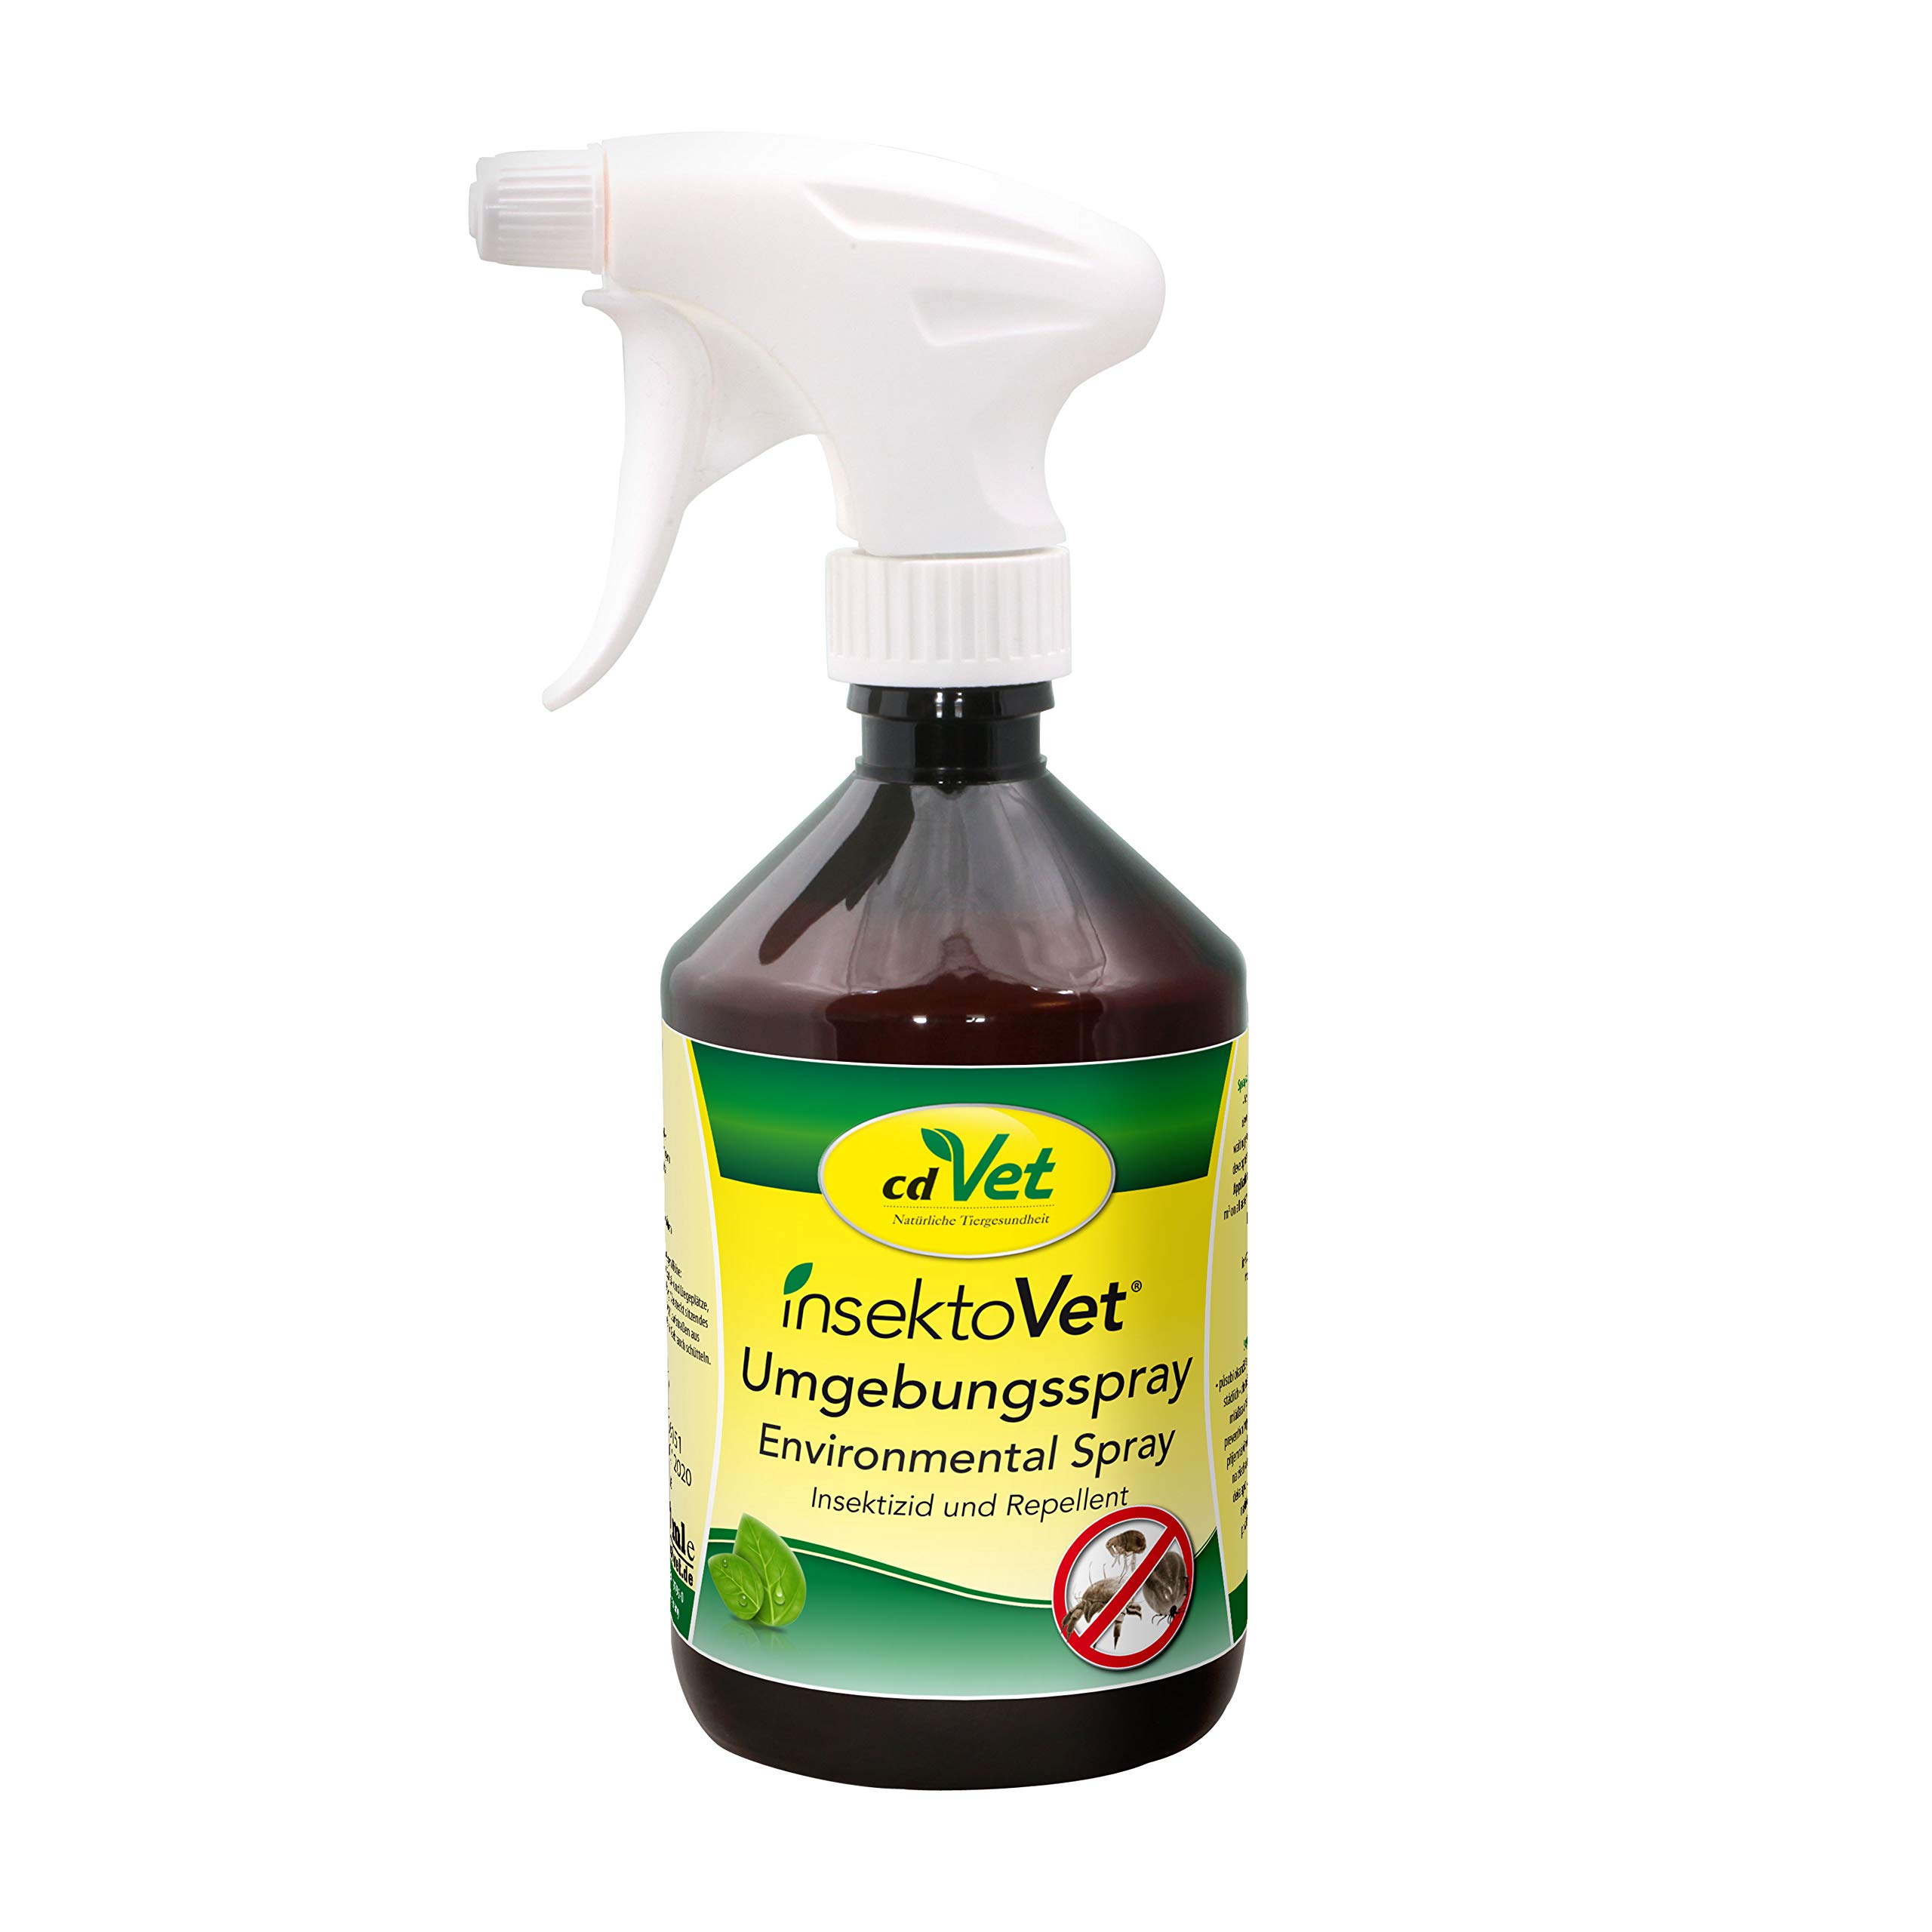 cdVet FlohEx Umgebungsspray, rein pflanzliches Flohspray 500 ml - natürlicher Flohschutz ohne Chemie für Hunde, Katzen und Nagern